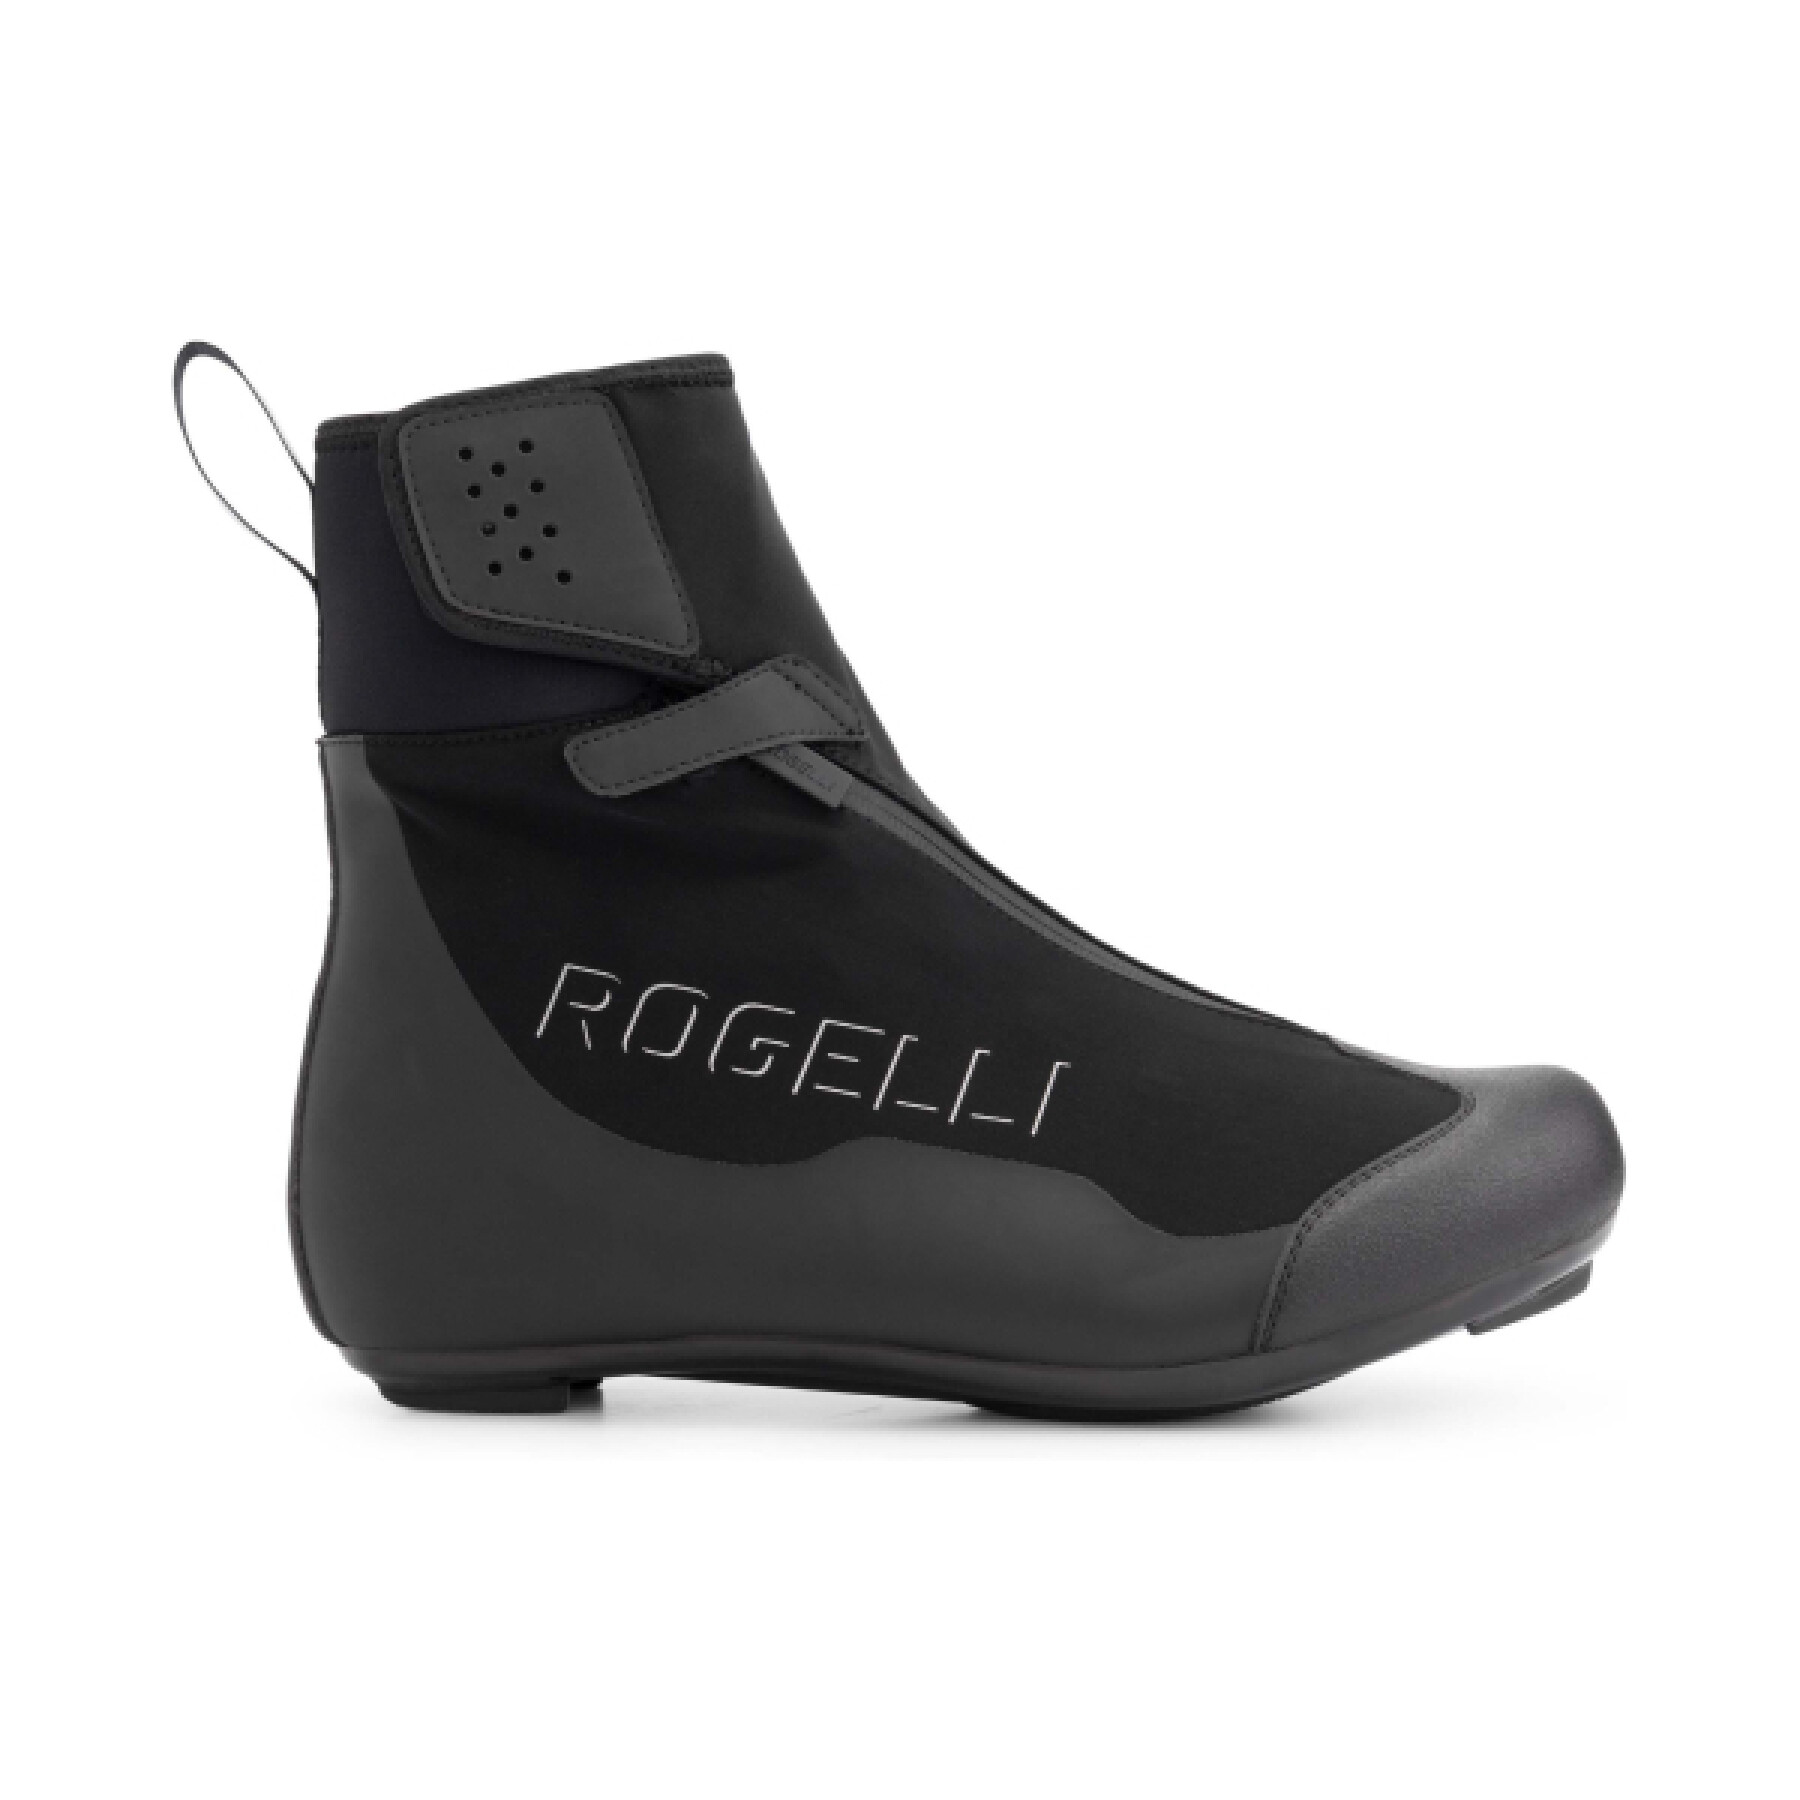 Schuhe Rogelli R-1000 Artic